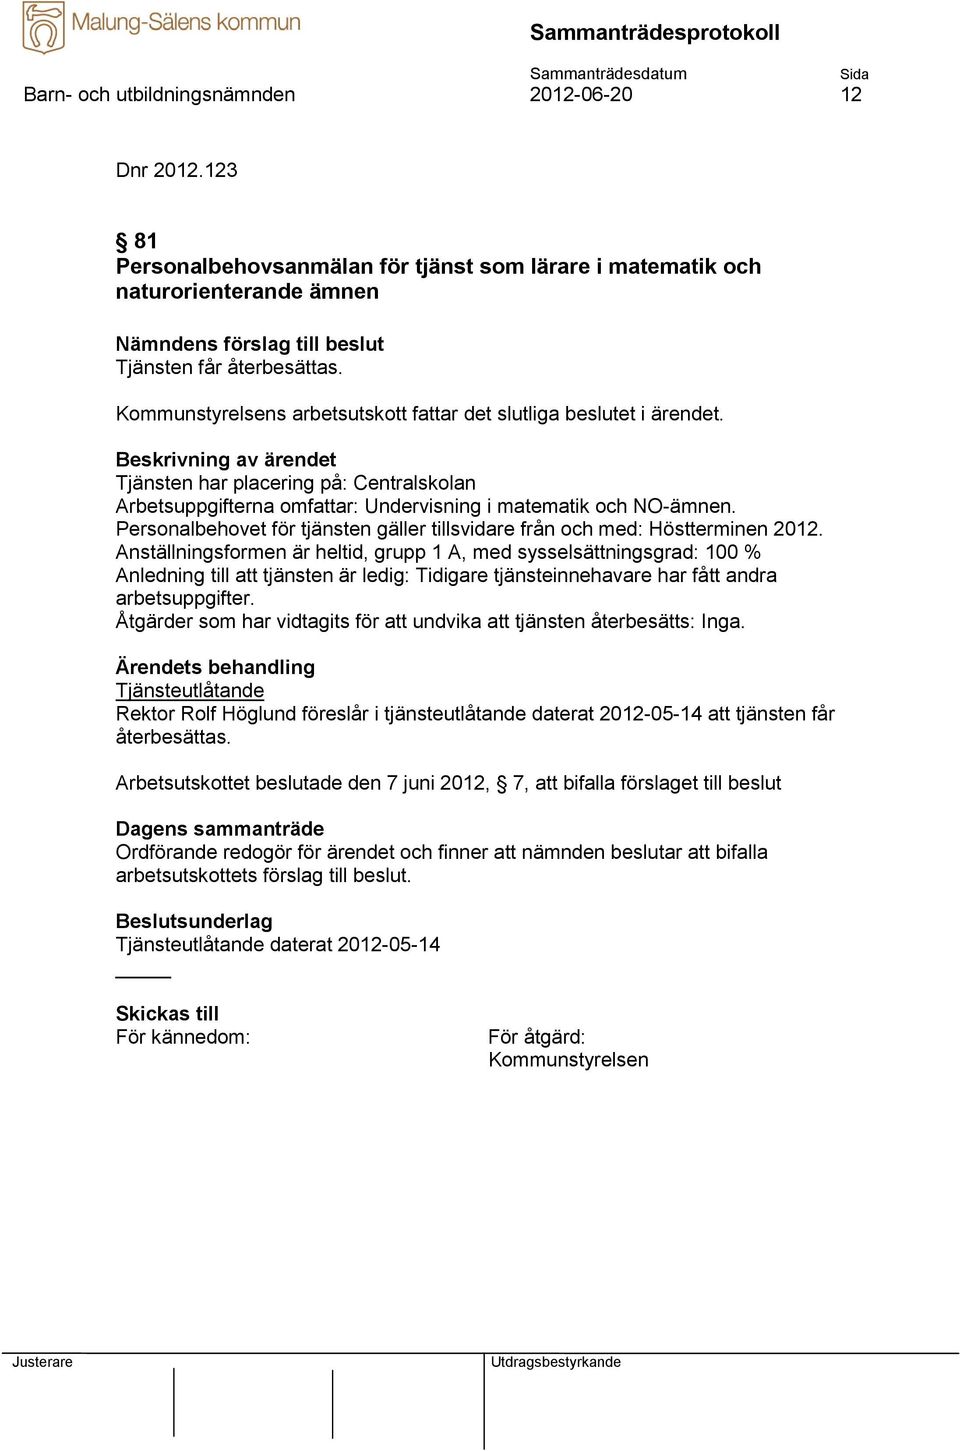 Personalbehovet för tjänsten gäller tillsvidare från och med: Höstterminen 2012.